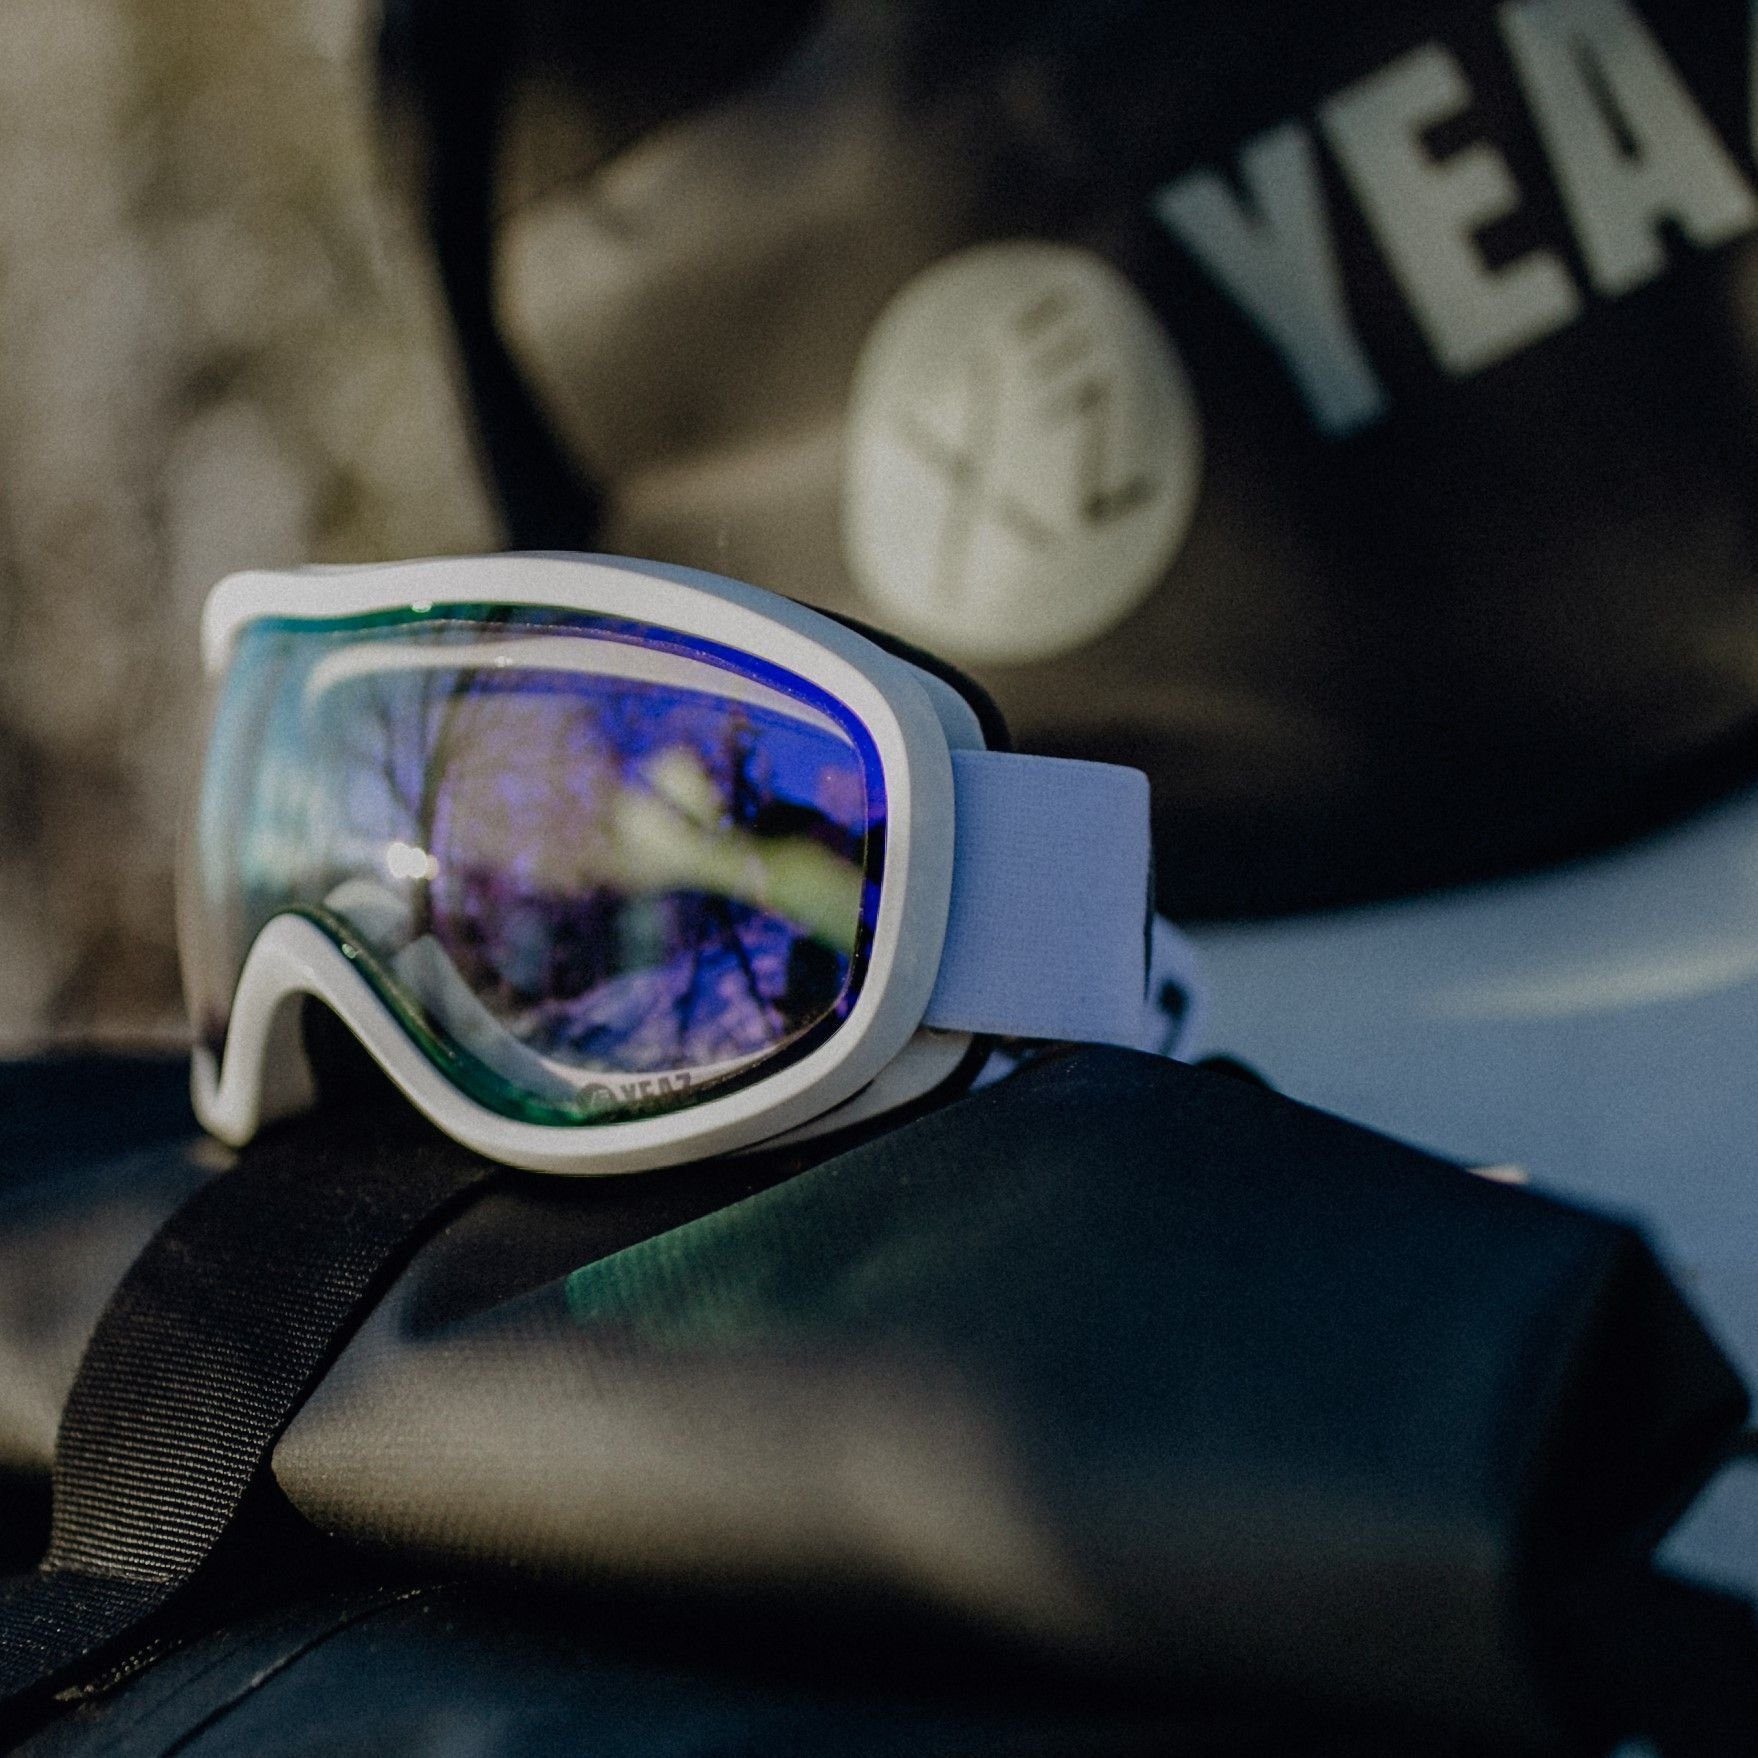 YEAZ Skibrille STEEZE und und violett/weiss, Premium-Ski- snowboard-brille Snowboardbrille für Erwachsene ski- und Jugendliche